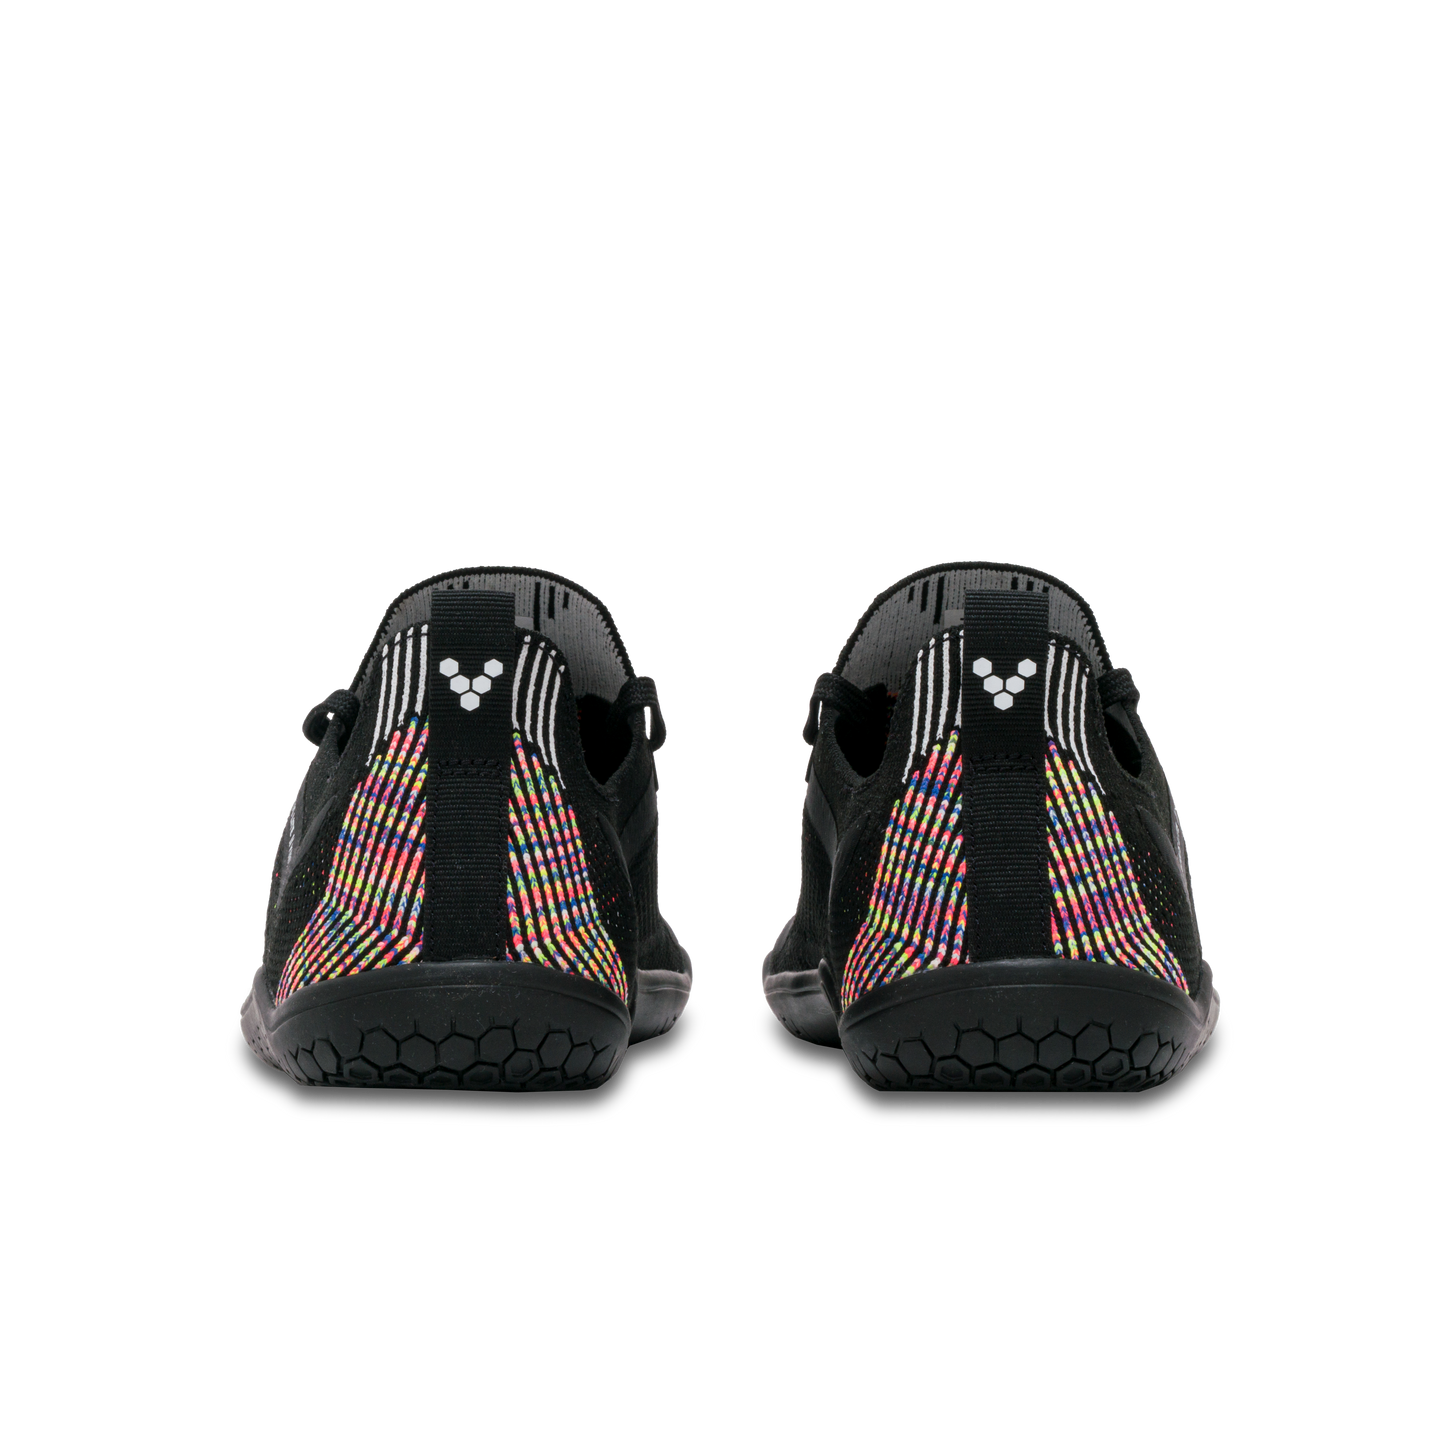 Par af Vivobarefoot Primus Lite Knit Womens i varianten Obsidian Iridescent, set bagfra. Skoene har en farverig strik og tynd sål, ideelle til barfodsløb.